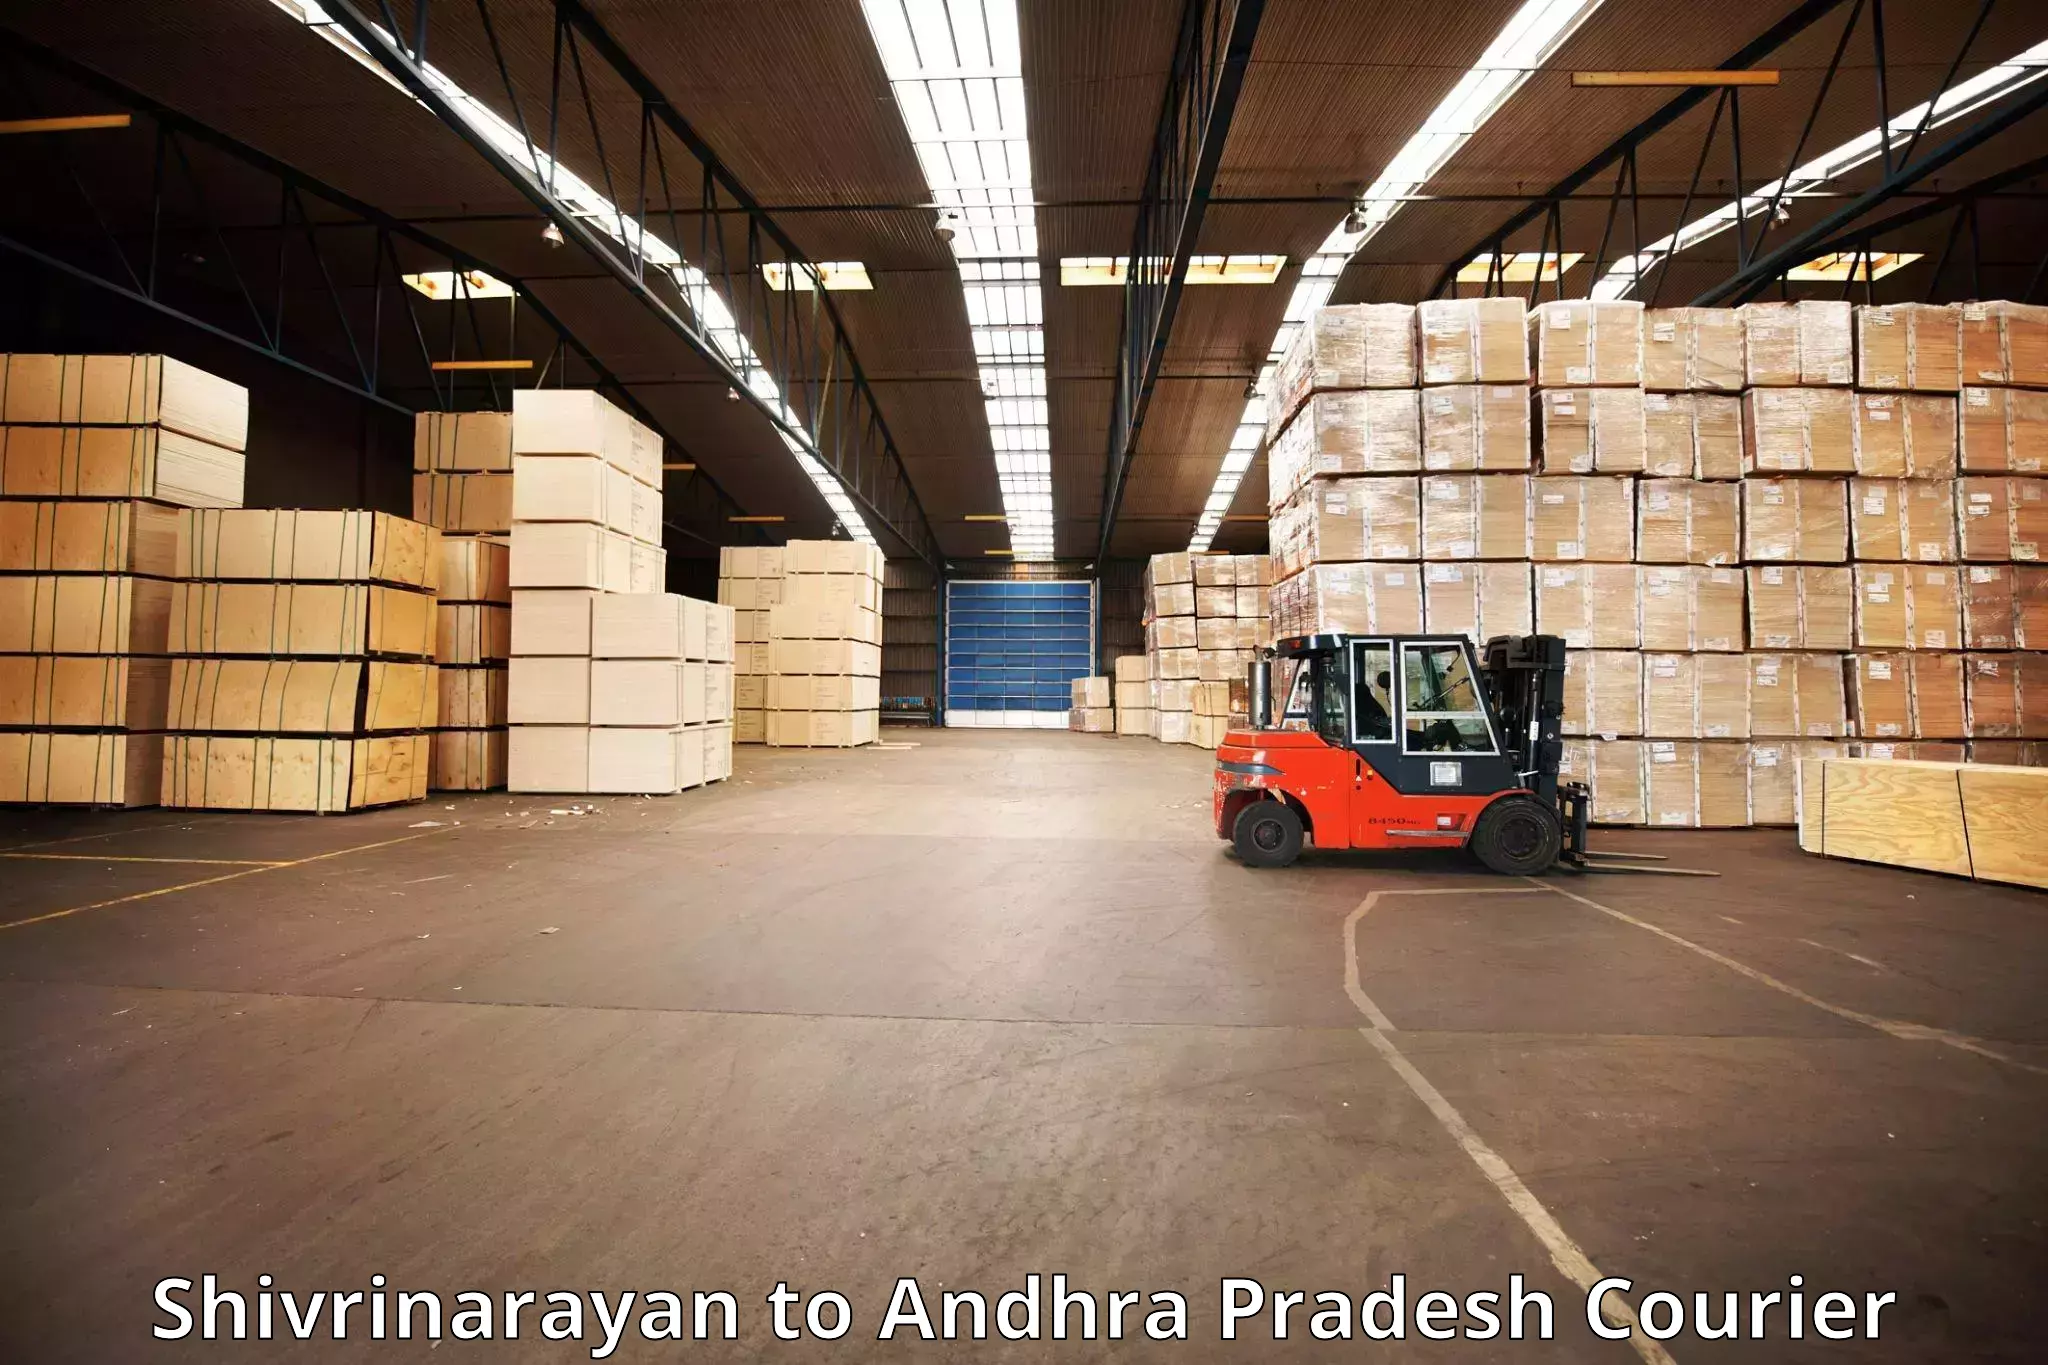 Luggage delivery app Shivrinarayan to Palasa